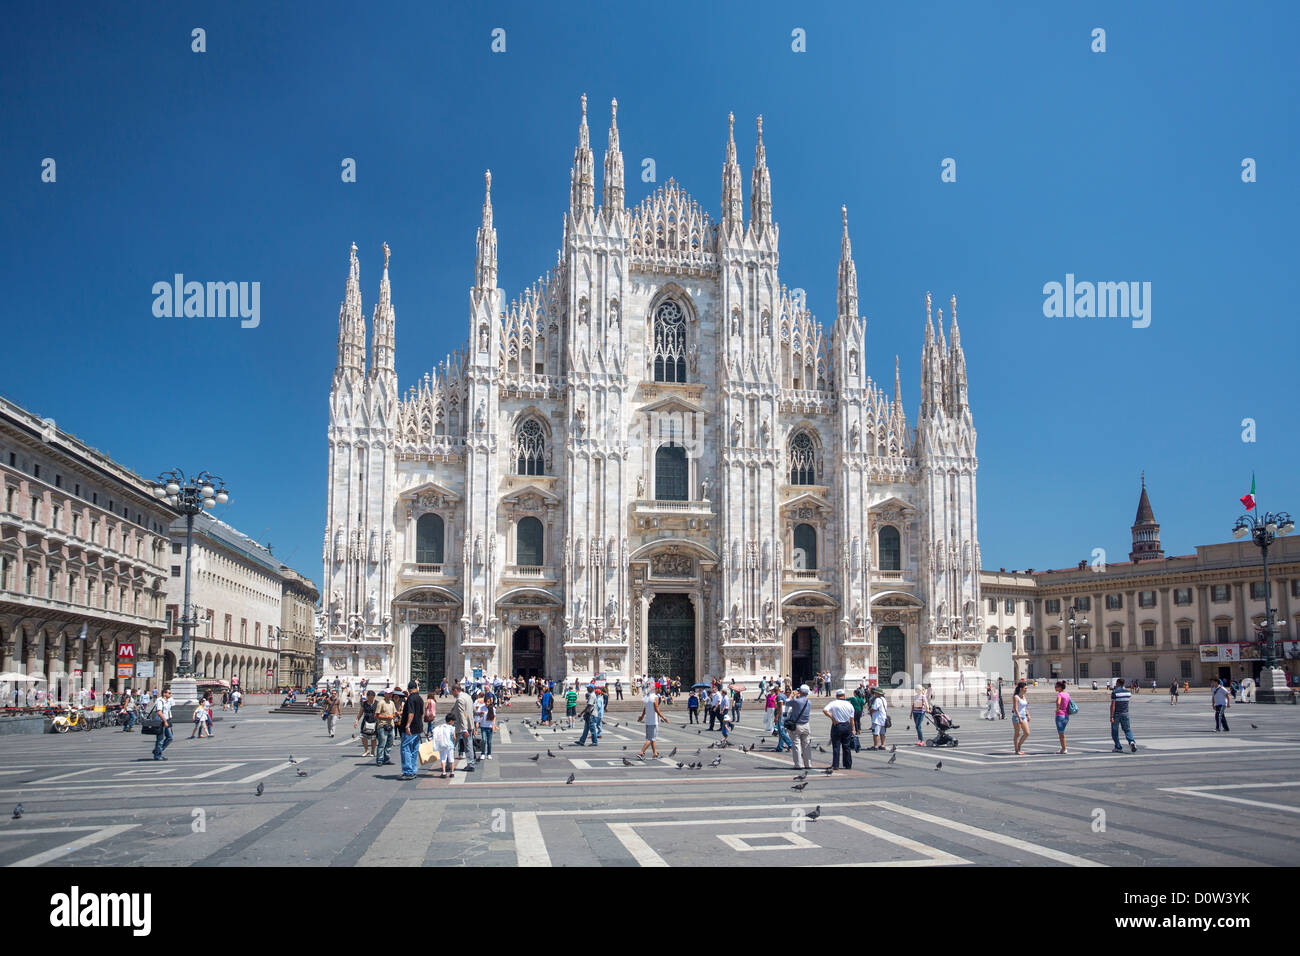 L'Italie, l'Europe, voyage, Milano, Milan, le Duomo, la cathédrale, l'architecture, le centre-ville, centre-ville, le Duomo, l'église, square, monumental, sky Banque D'Images